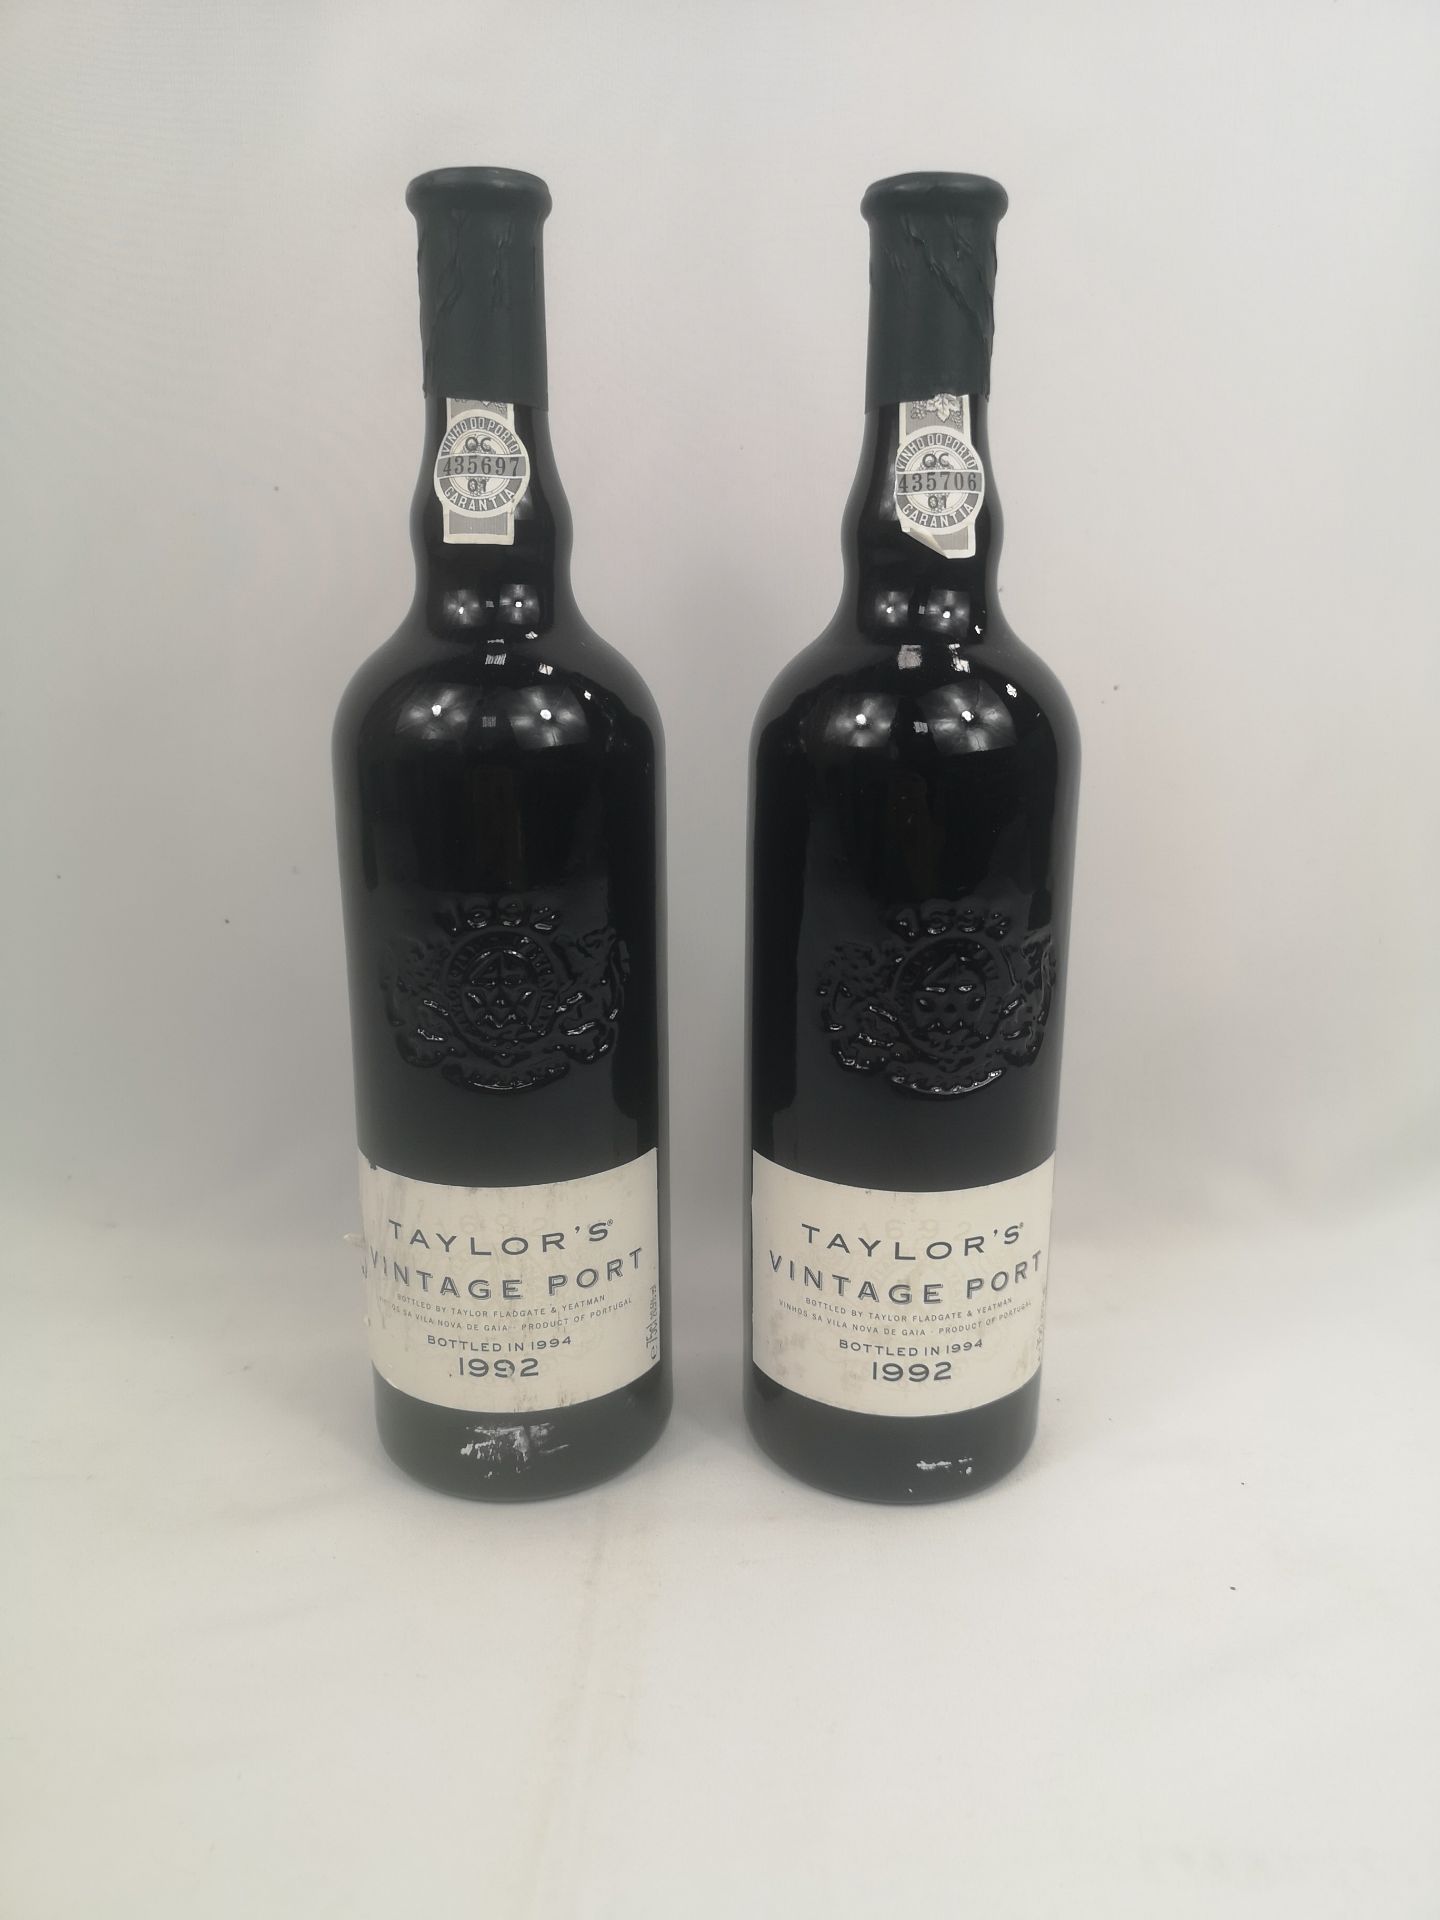 Two bottles of Taylor's Vintage Port 1992